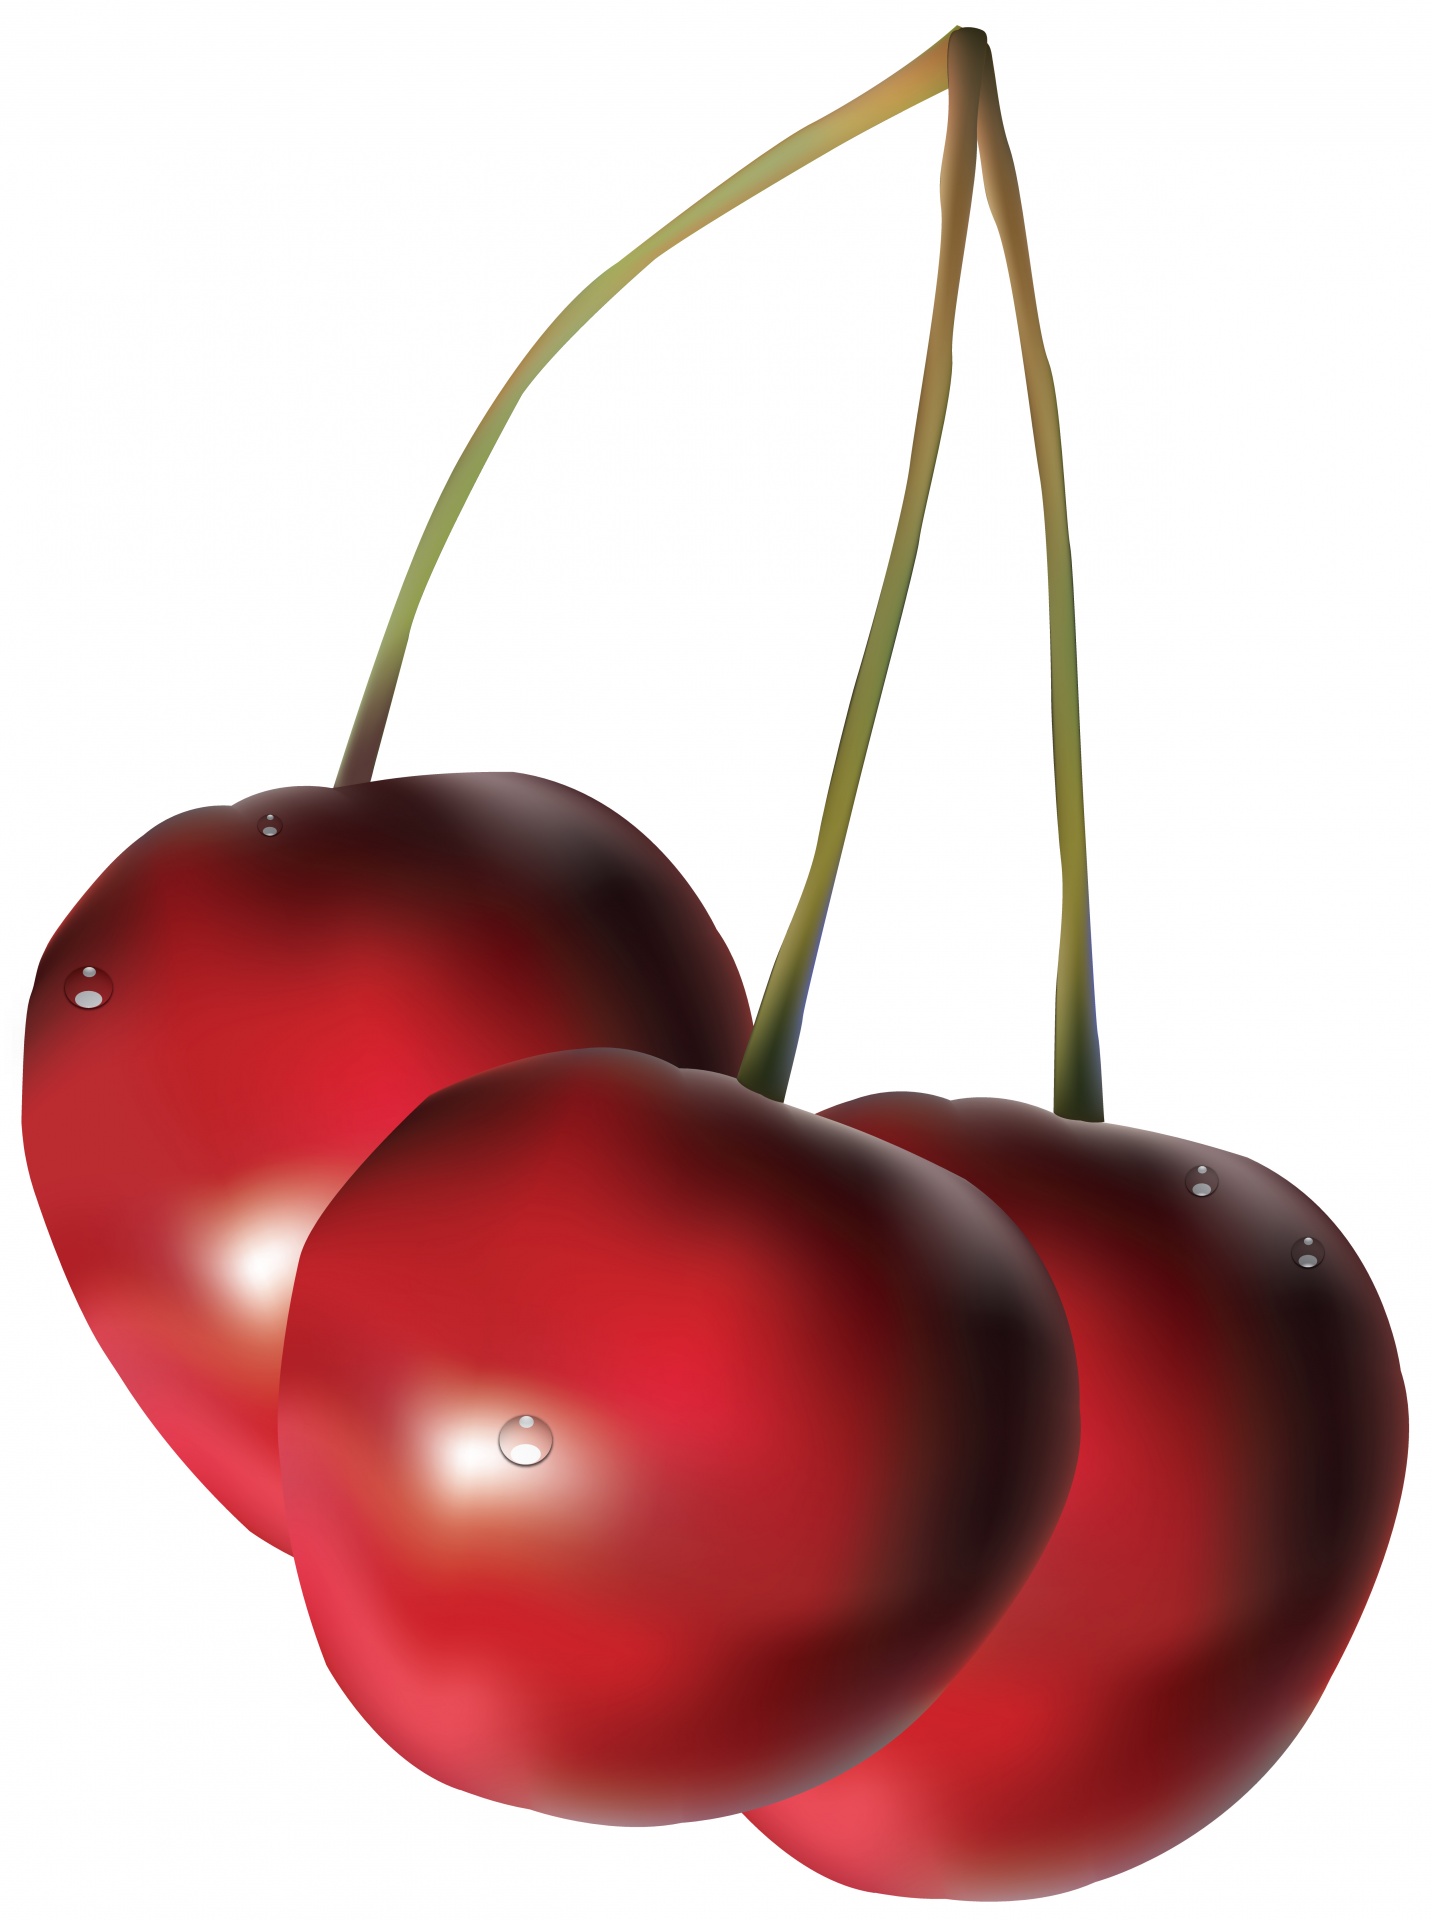 cherry illustration fruit free photo